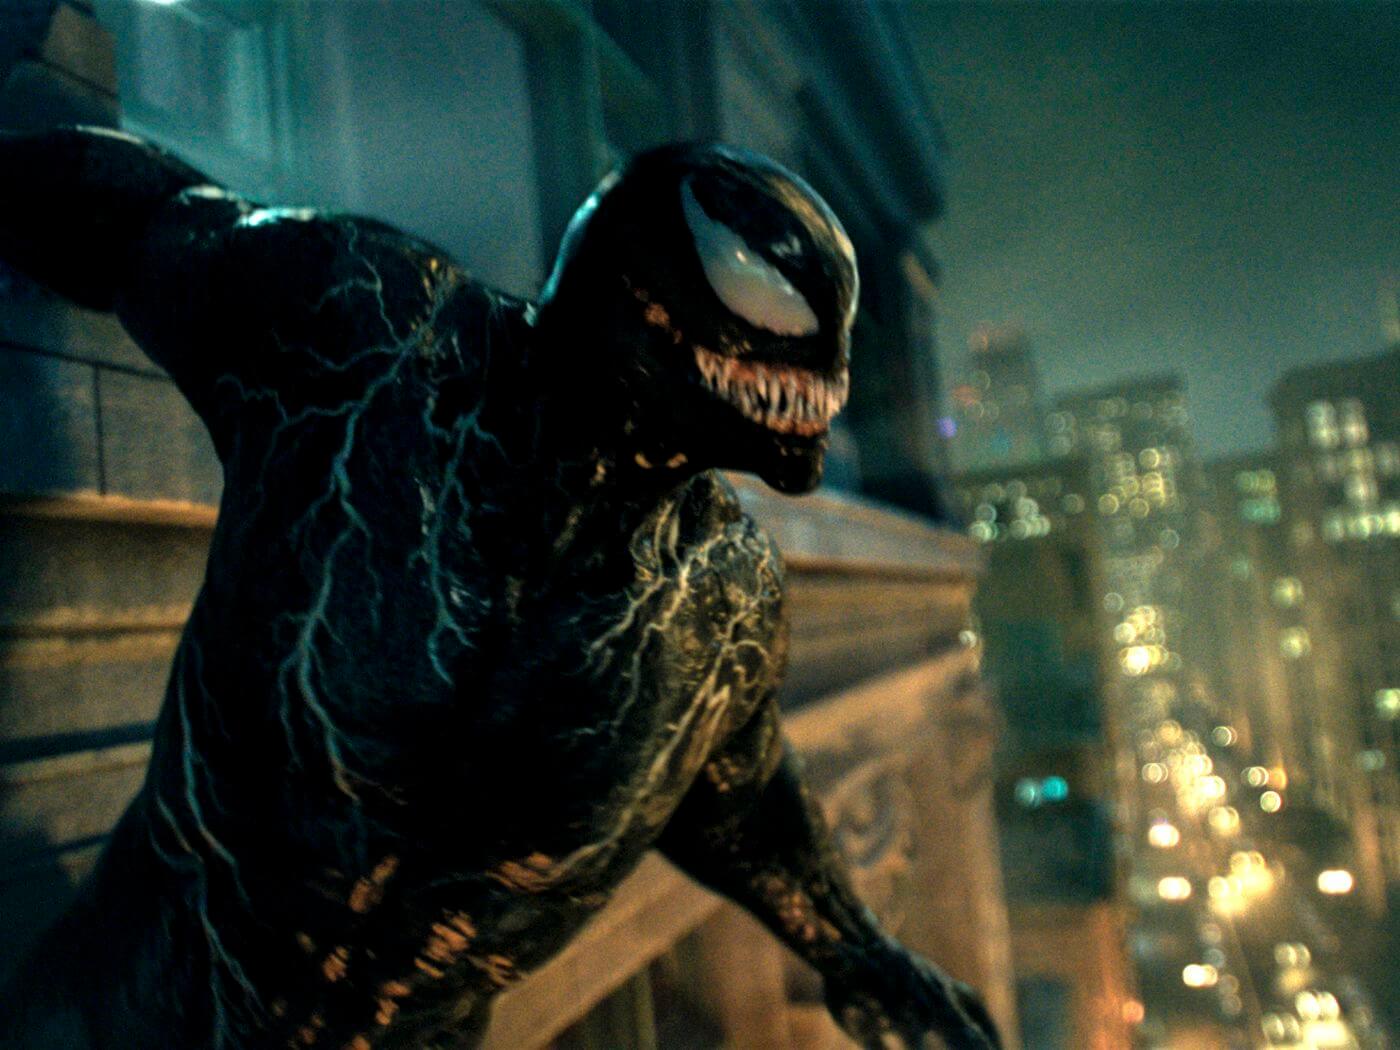 Kevin Feige elmondása szerint a Venom 2. – Vérontó stáblista utáni jelenete sok koordinációt igényelt